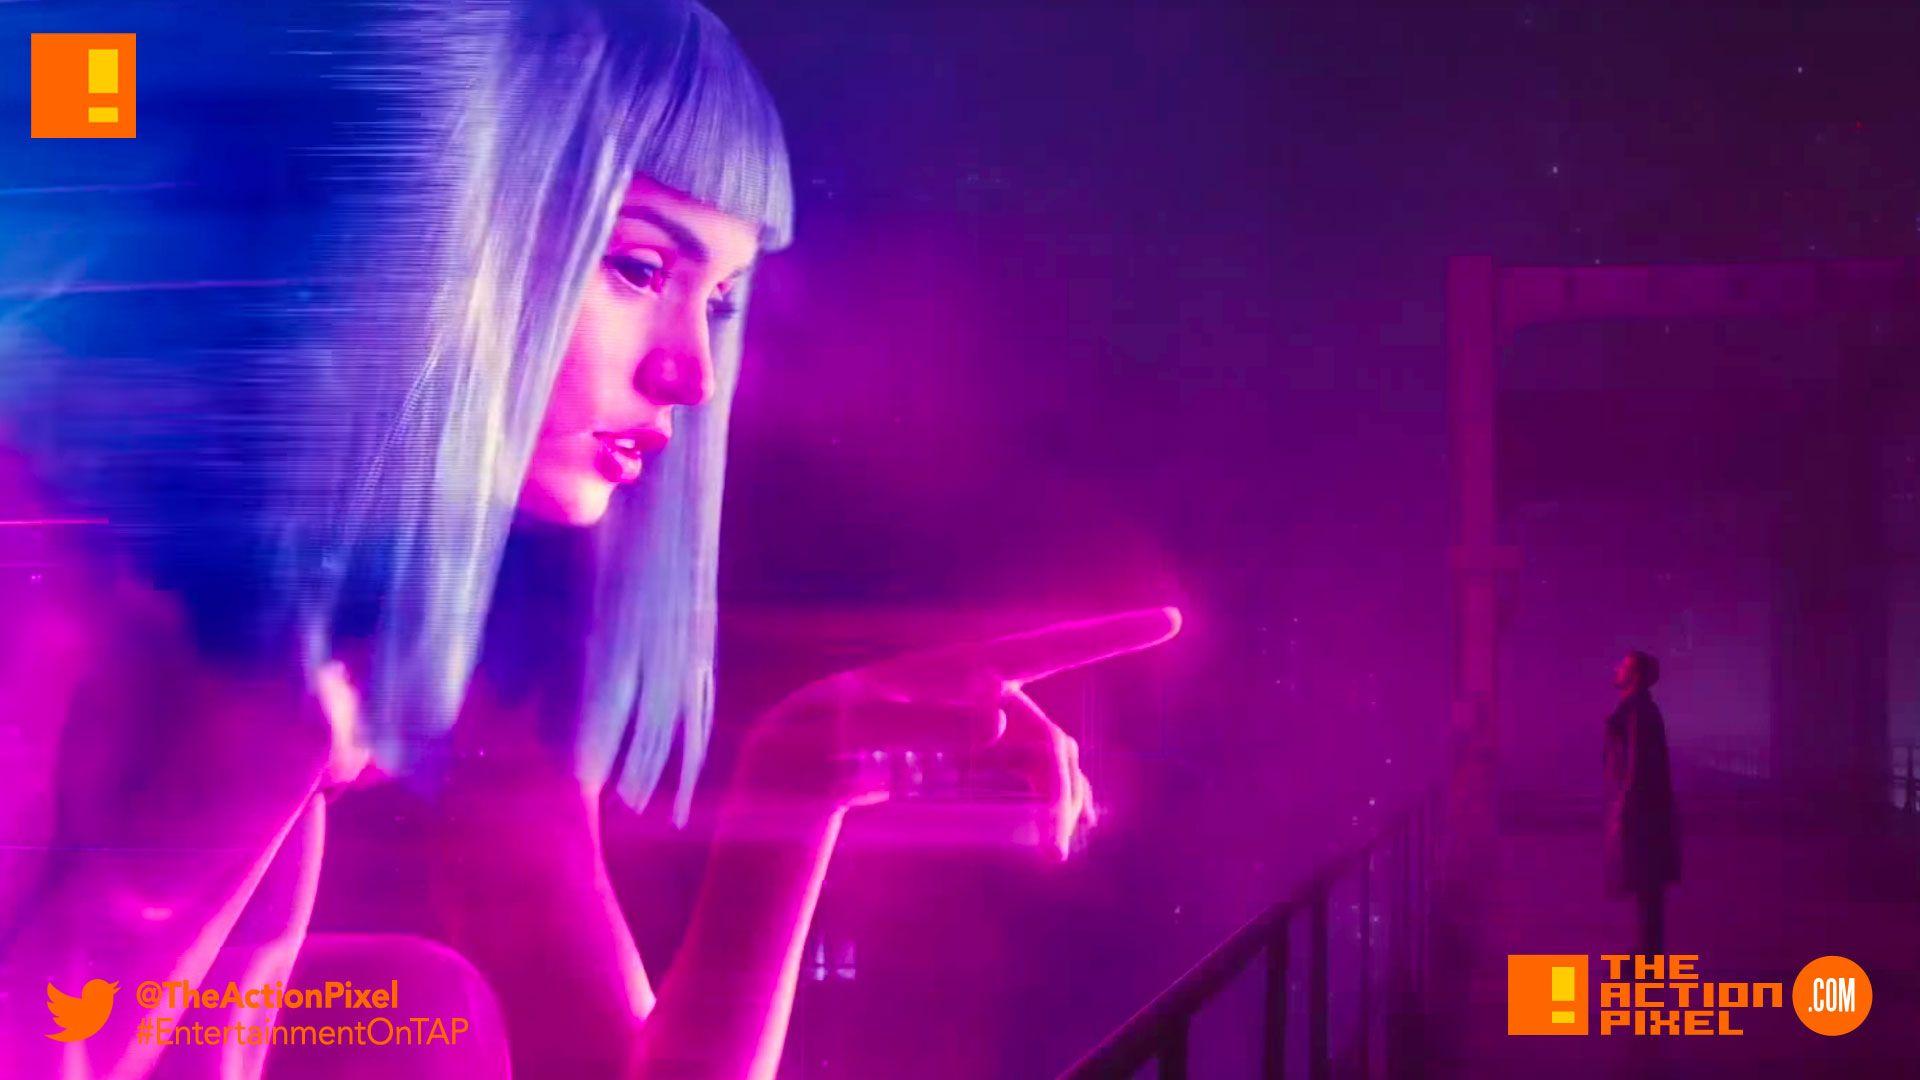 Blade Runner 2049” teaser promises new trailer tomorrow